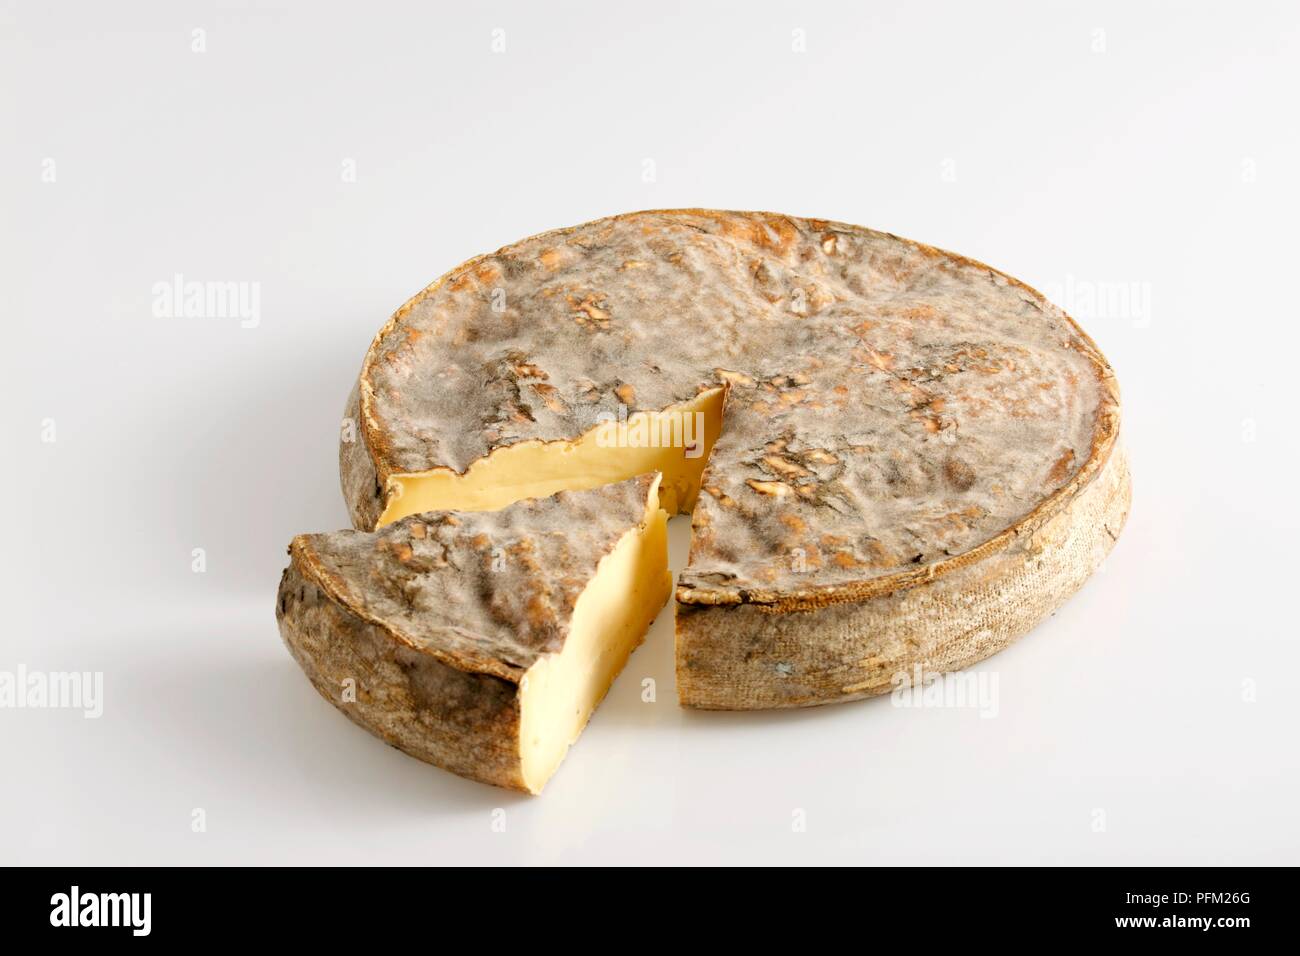 Roue et slice français AOC Saint-Nectaire fromage au lait de vache à croûte épaisse Banque D'Images